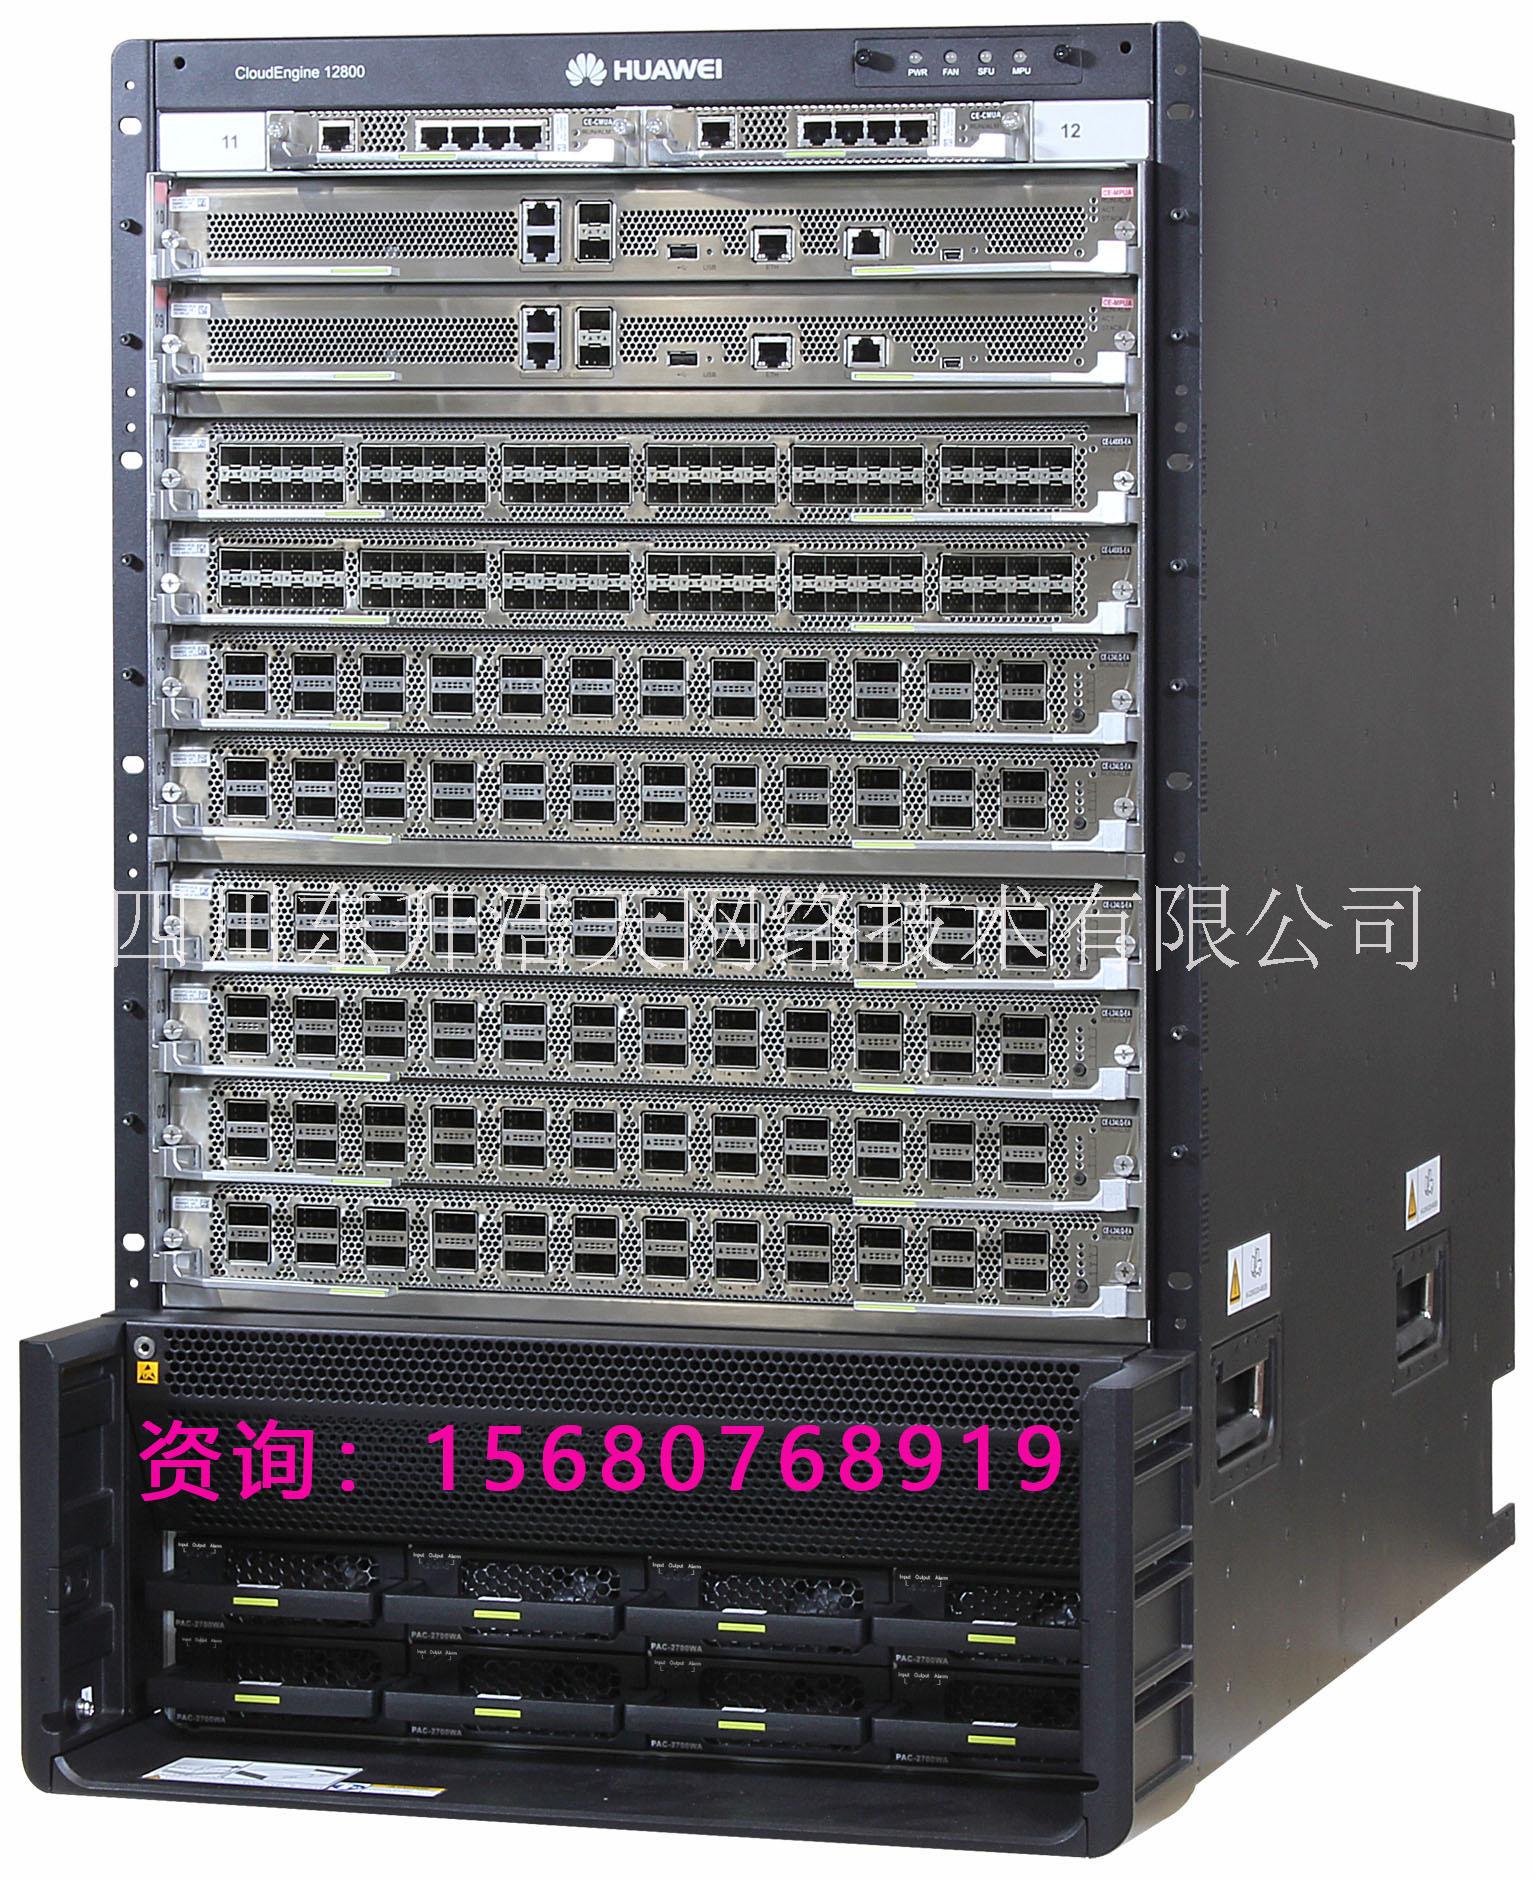 成都市数据中心CE12808/1280厂家回收华为/思科数据中心CE12808/12804大型数据中心核心设备现货库存